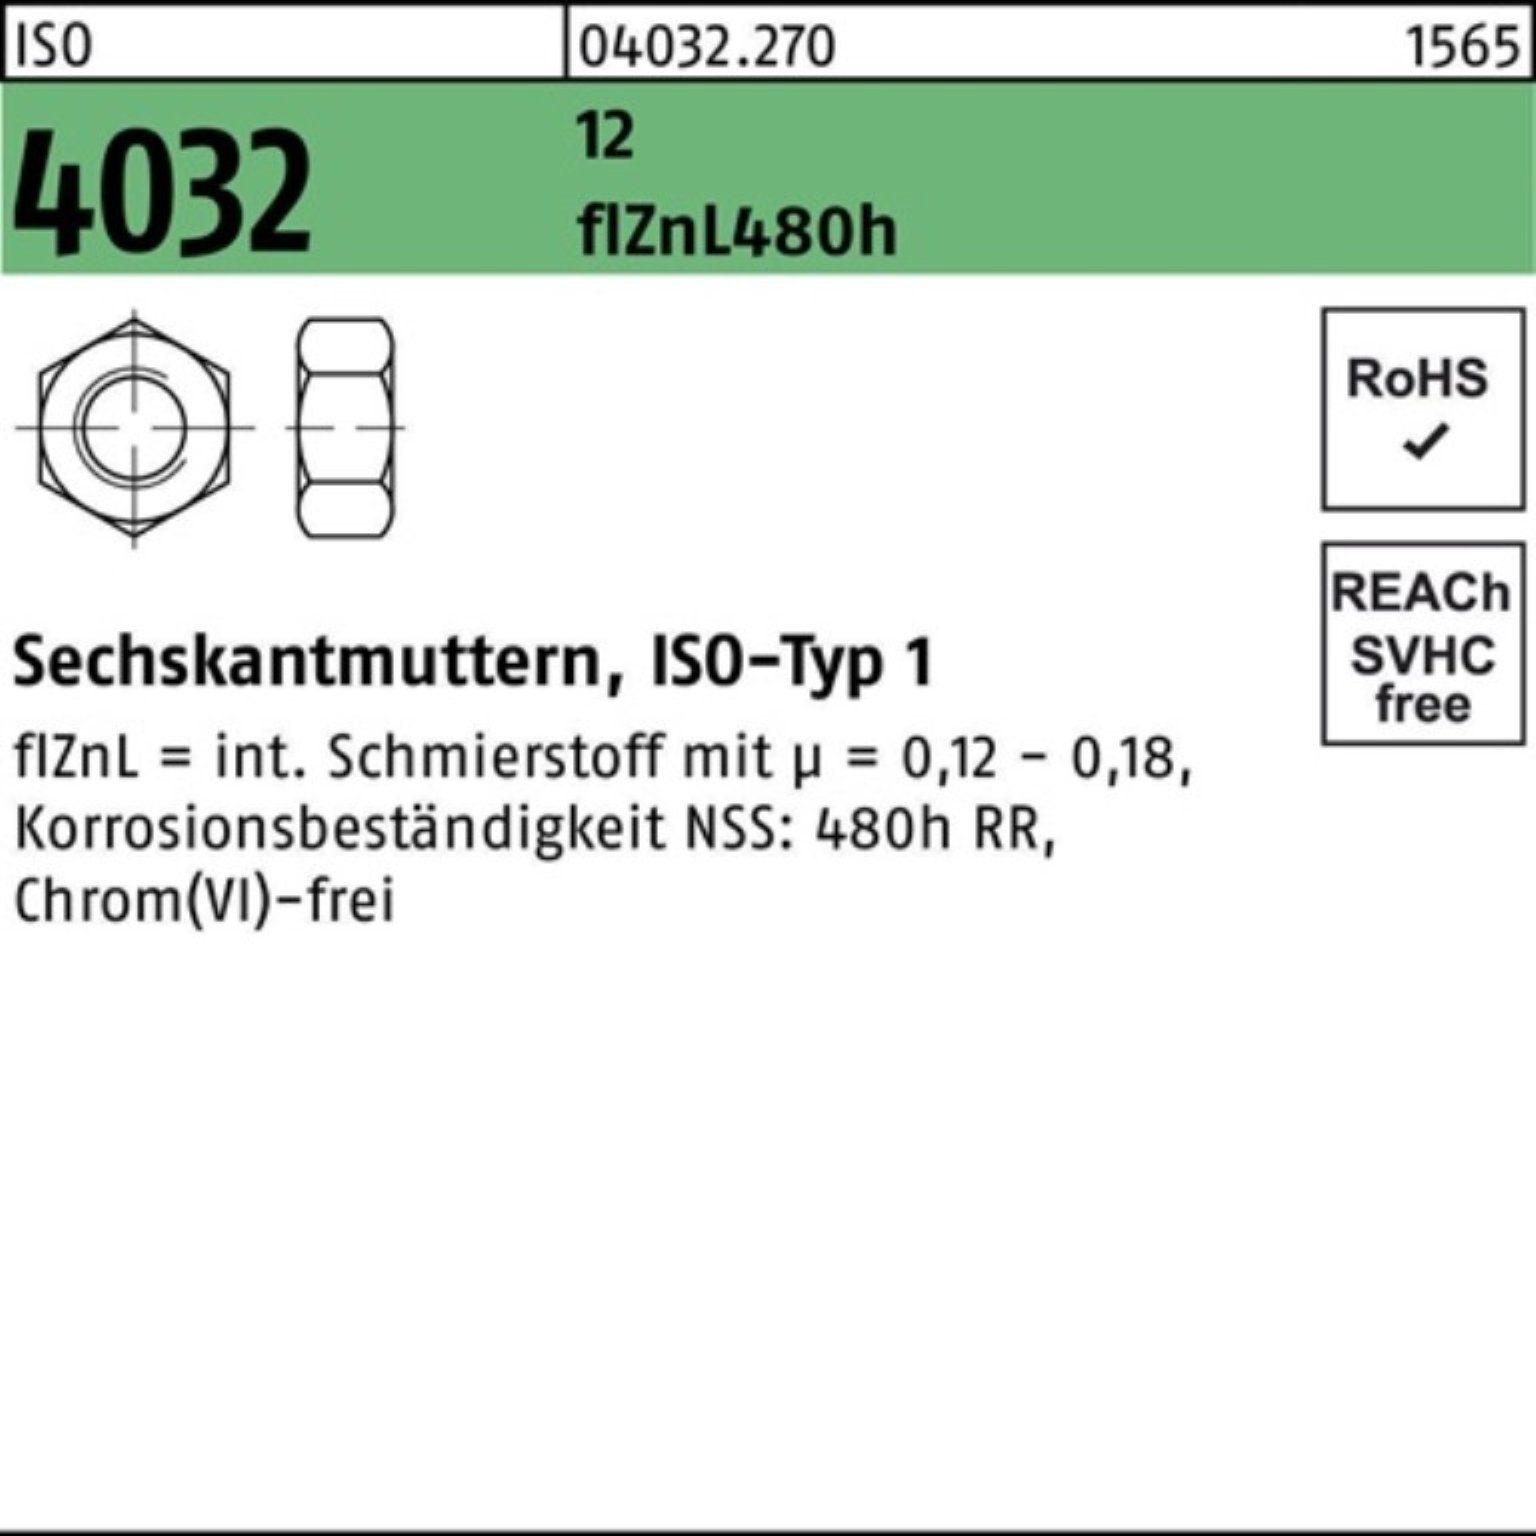 Bufab Muttern 100er Pack Sechskantmutter 480h ISO 12 zinklamellenb. 1 4032 M16 flZnL